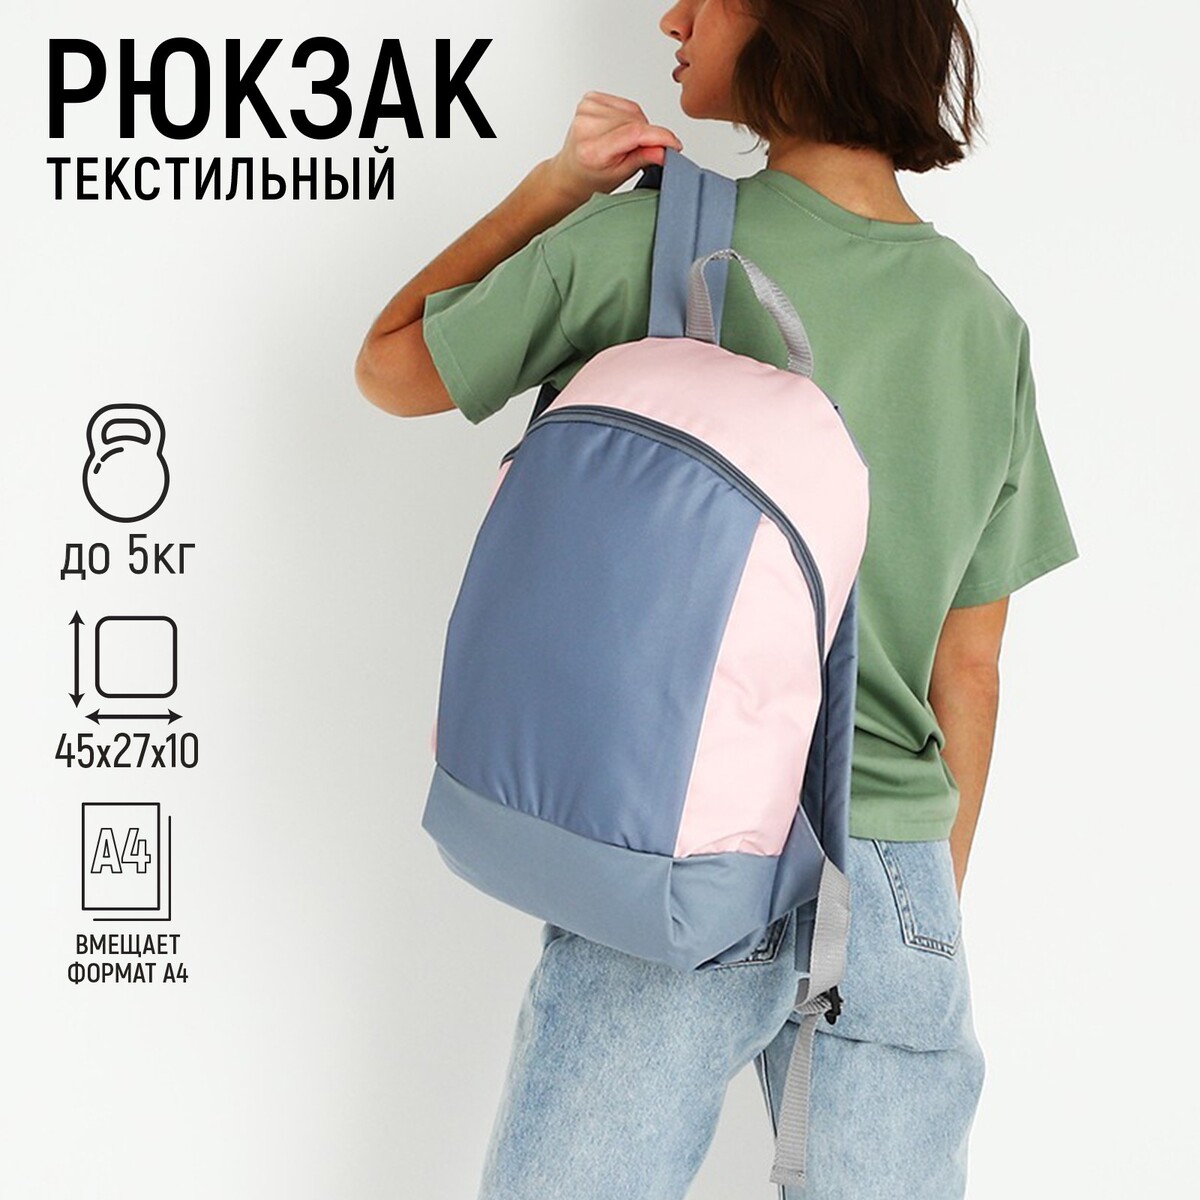 Рюкзак текстильный 46х30х10 см, вертикальный карман, цвет серый, розовый рюкзак текстильный 46х30х10 см вертикальный карман